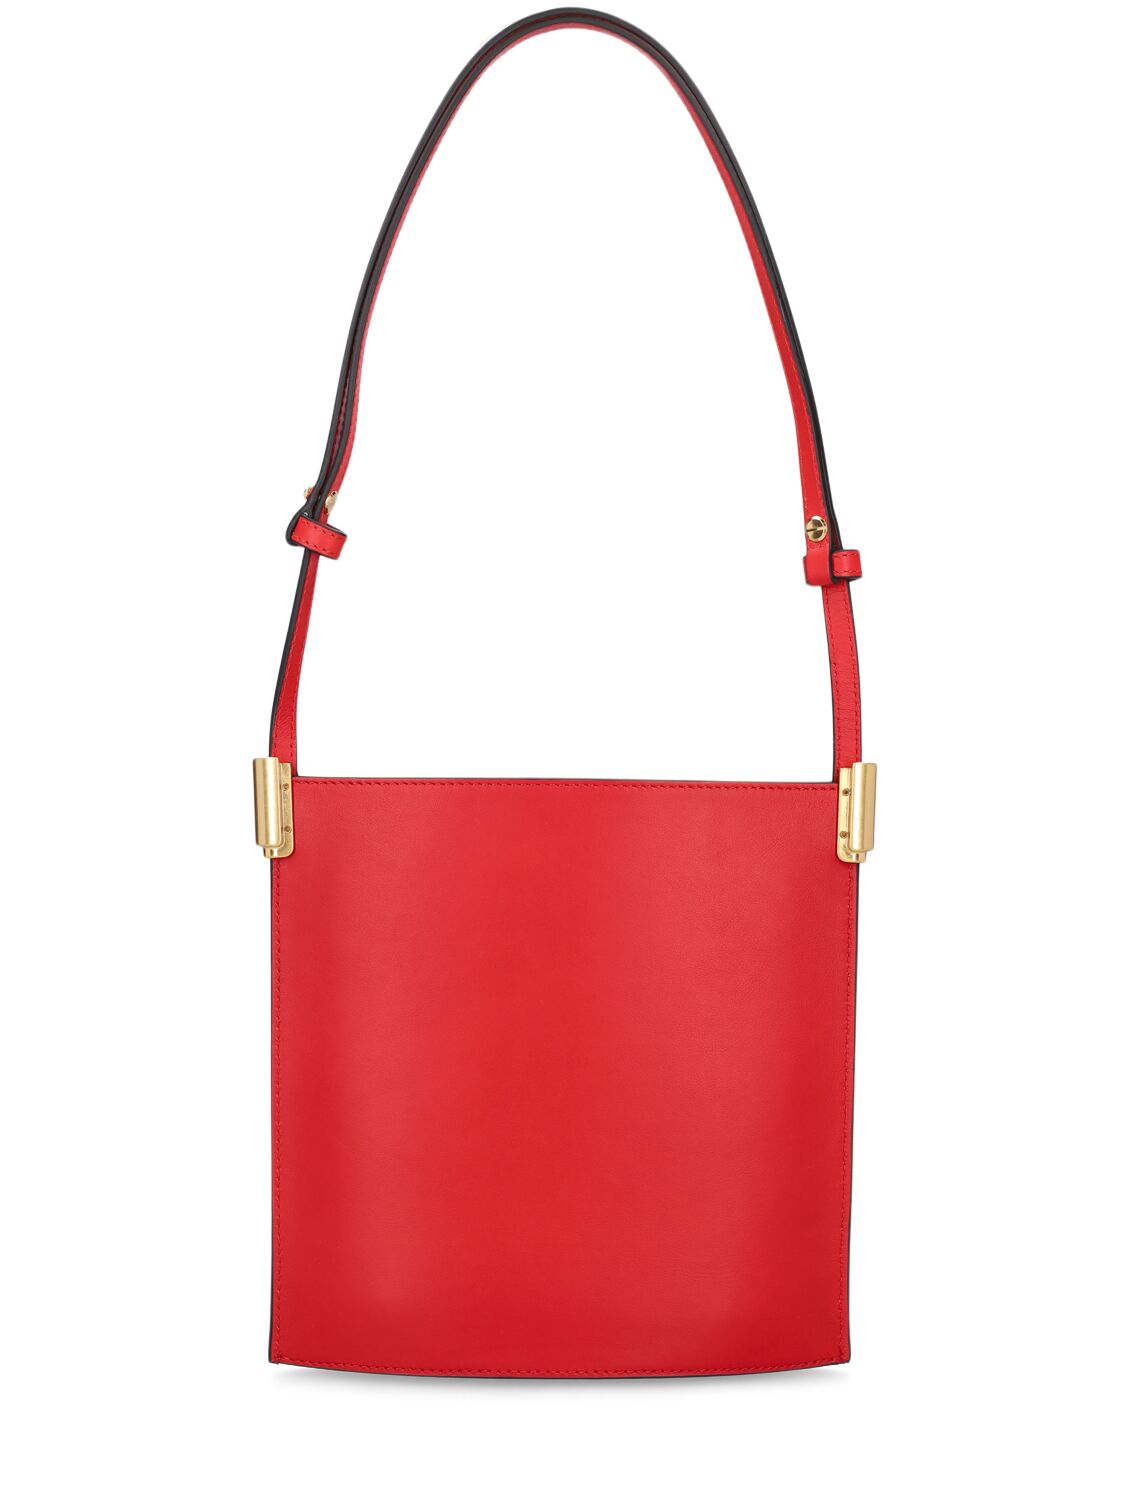 Shop Neous Dorado 1.0 Leather Shoulder Bag In Red